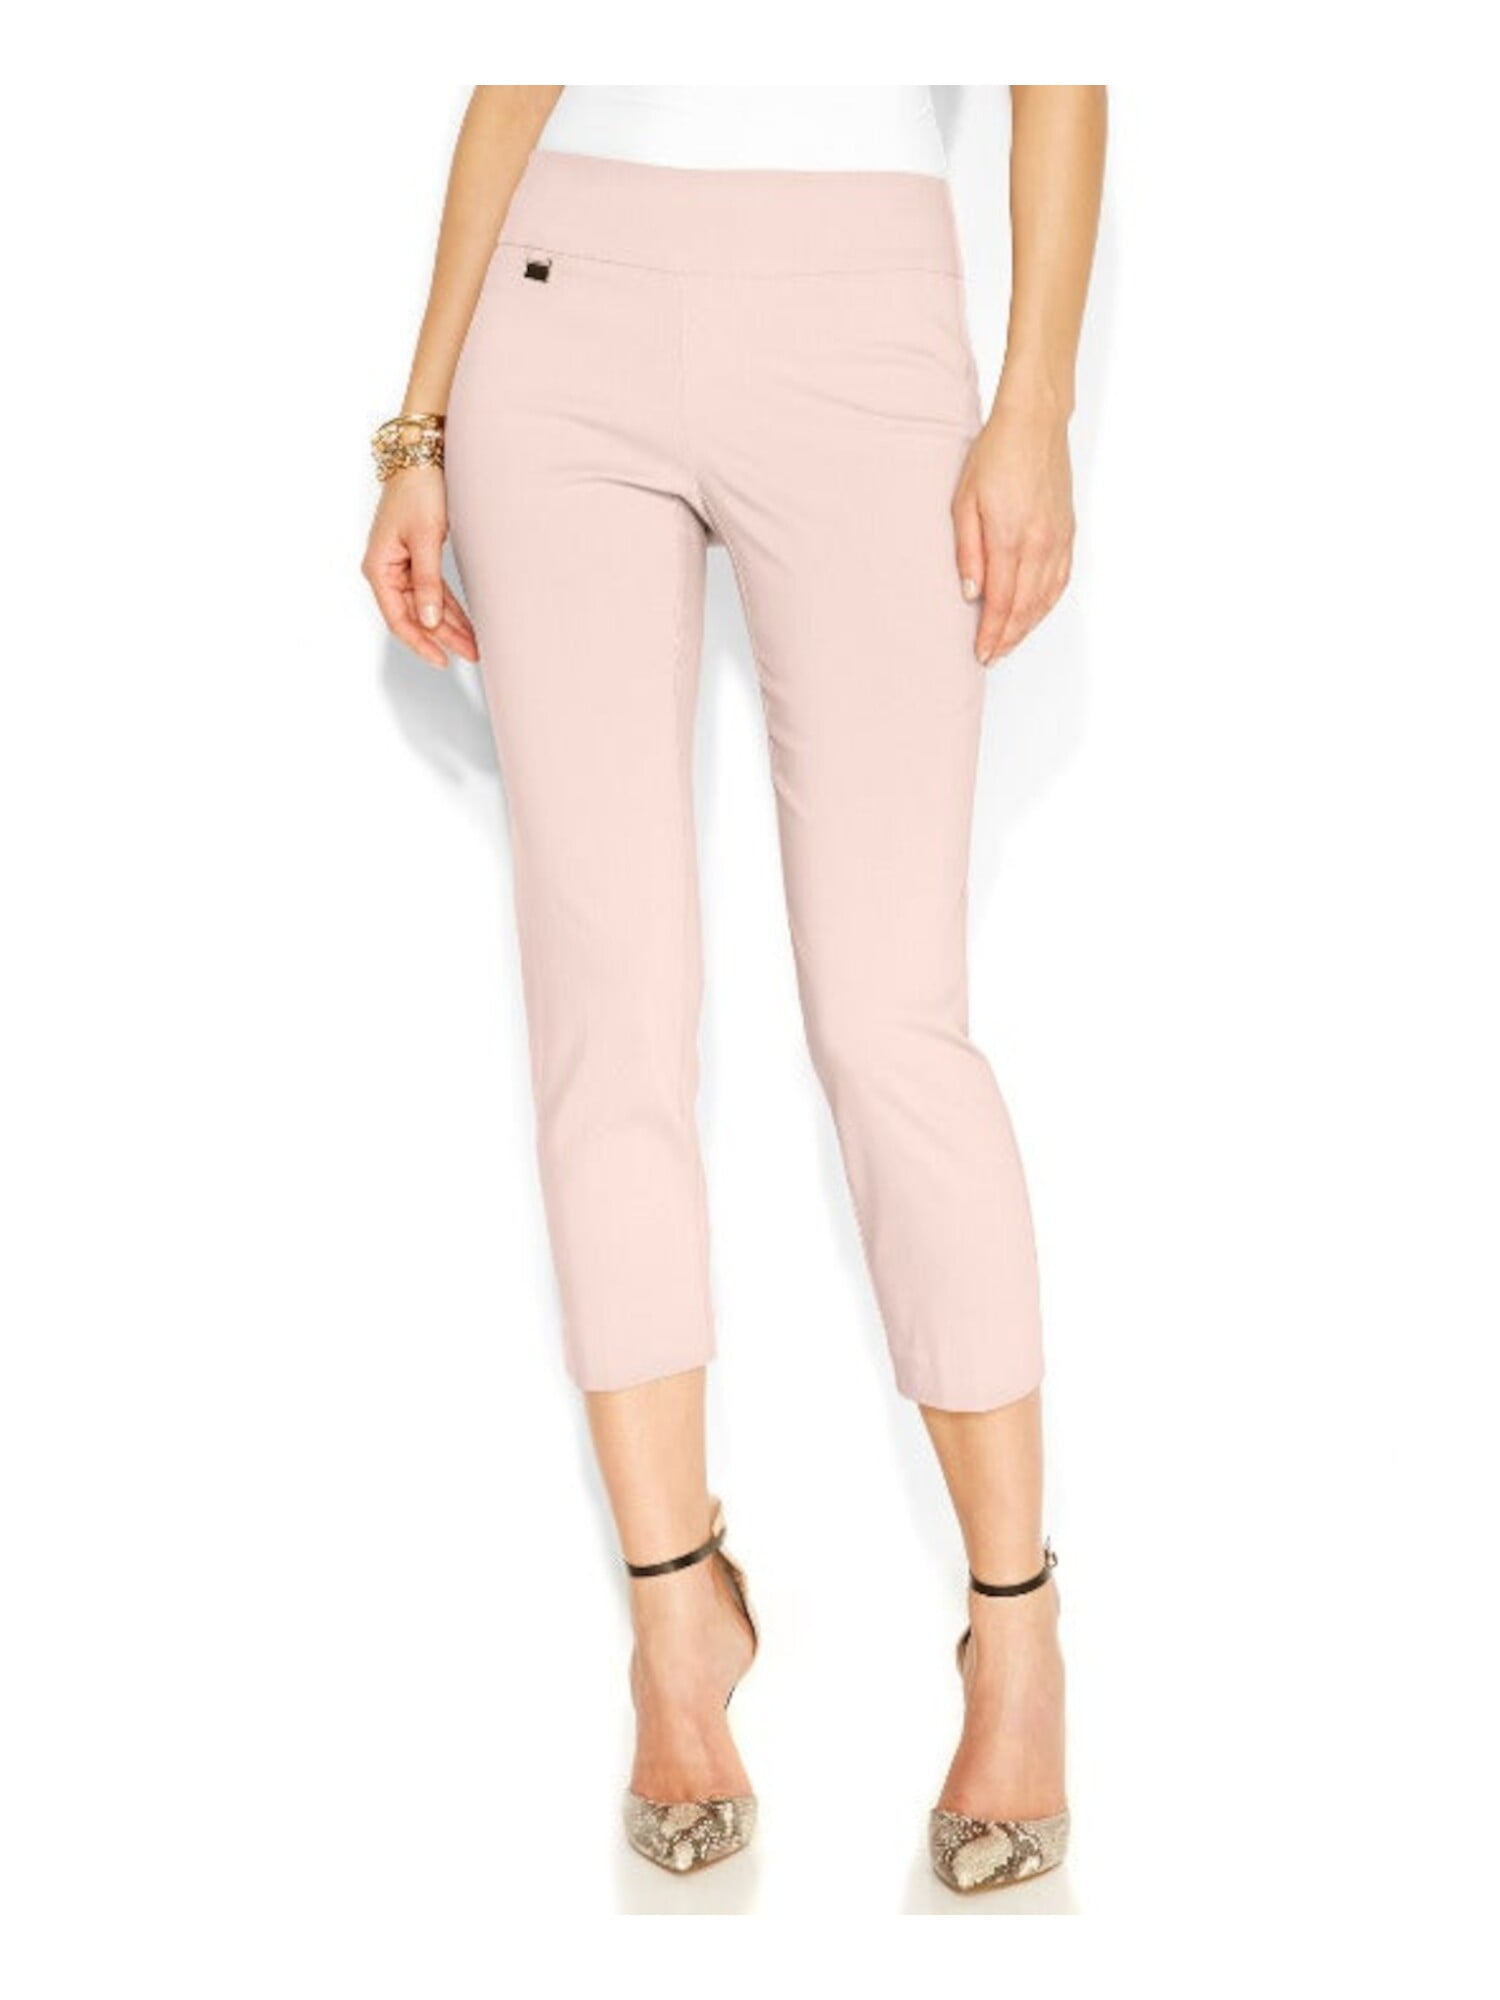 ALFANI Womens Pink Tummy Control Capri Pants Petites 8P - Walmart.com